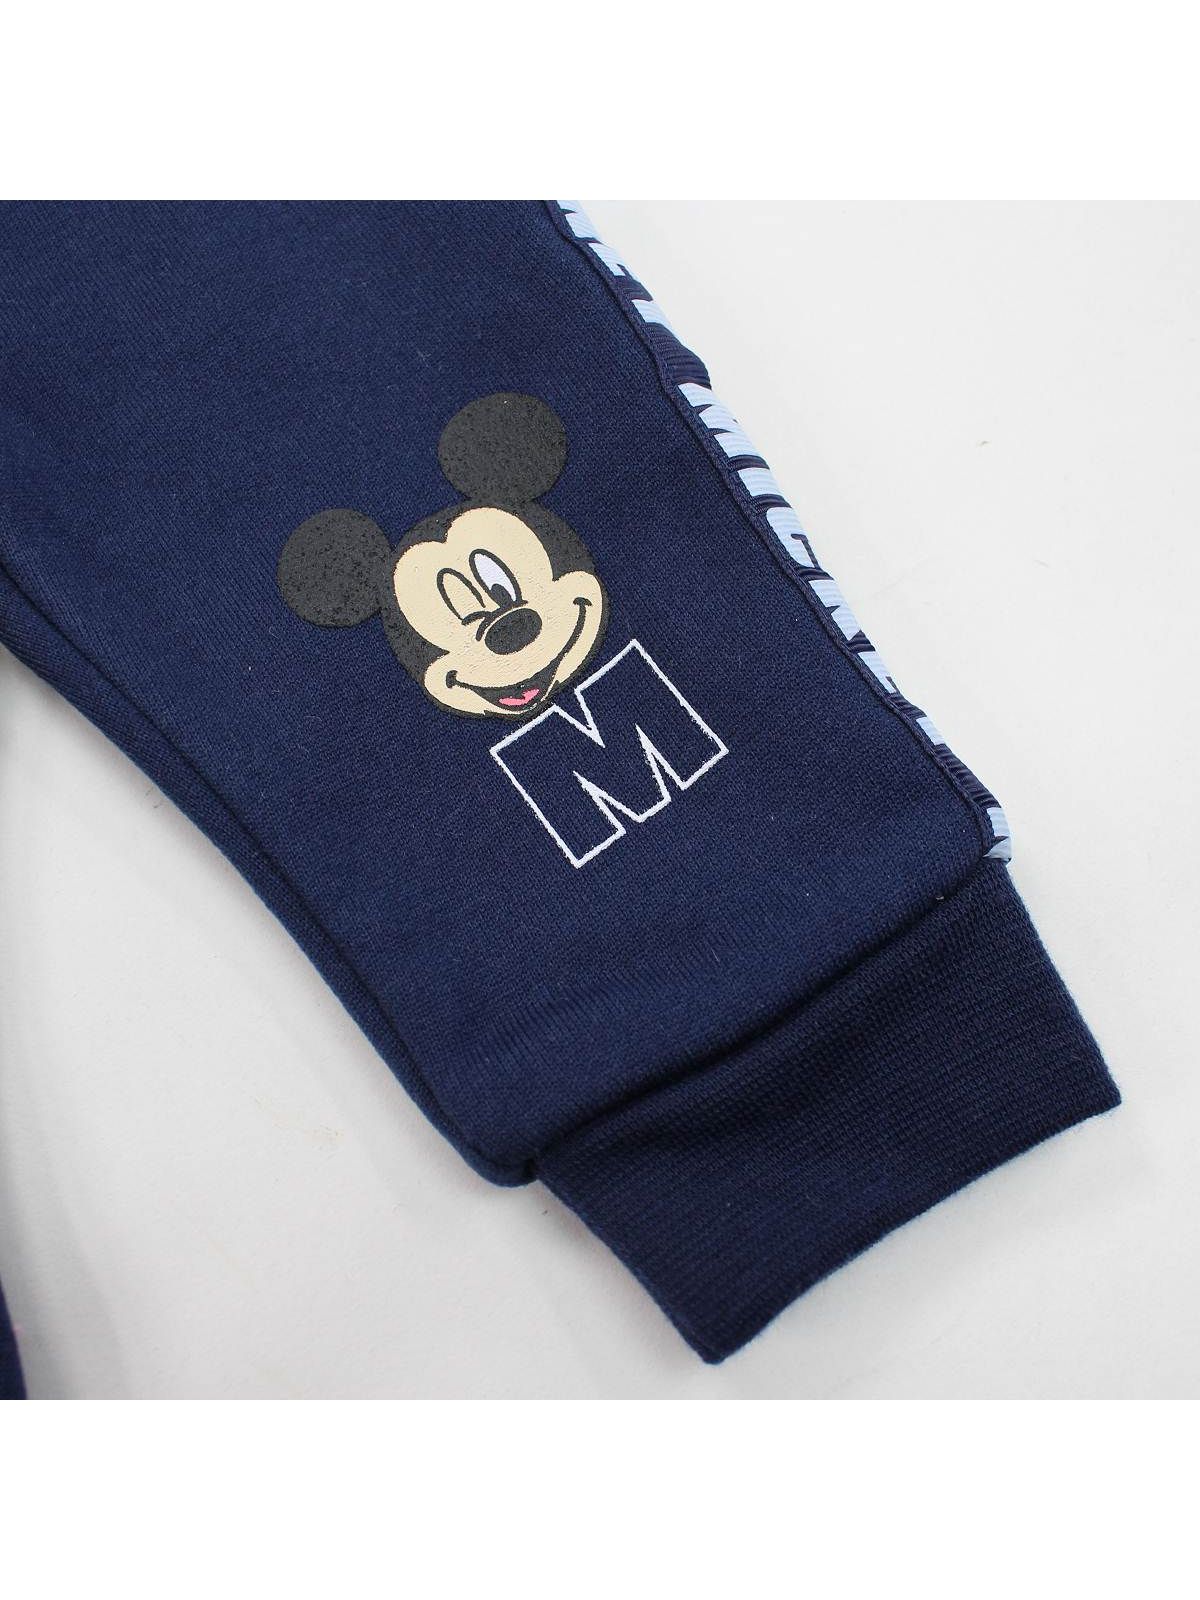 Mickey Trainingsanzug